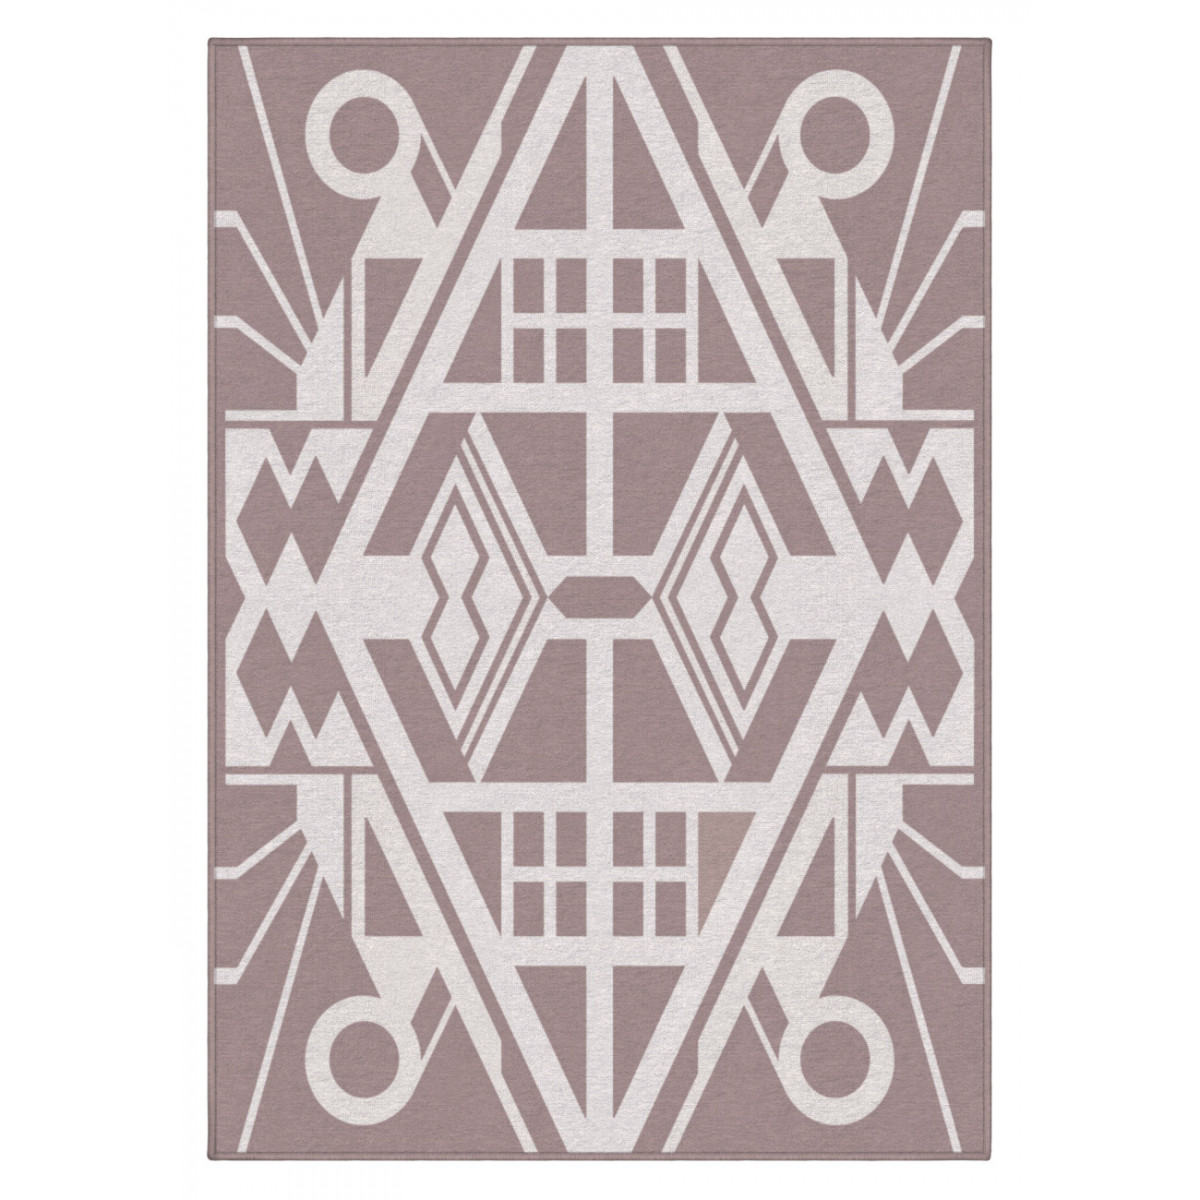 Designový kusový koberec Mexico od Jindřicha Lípy